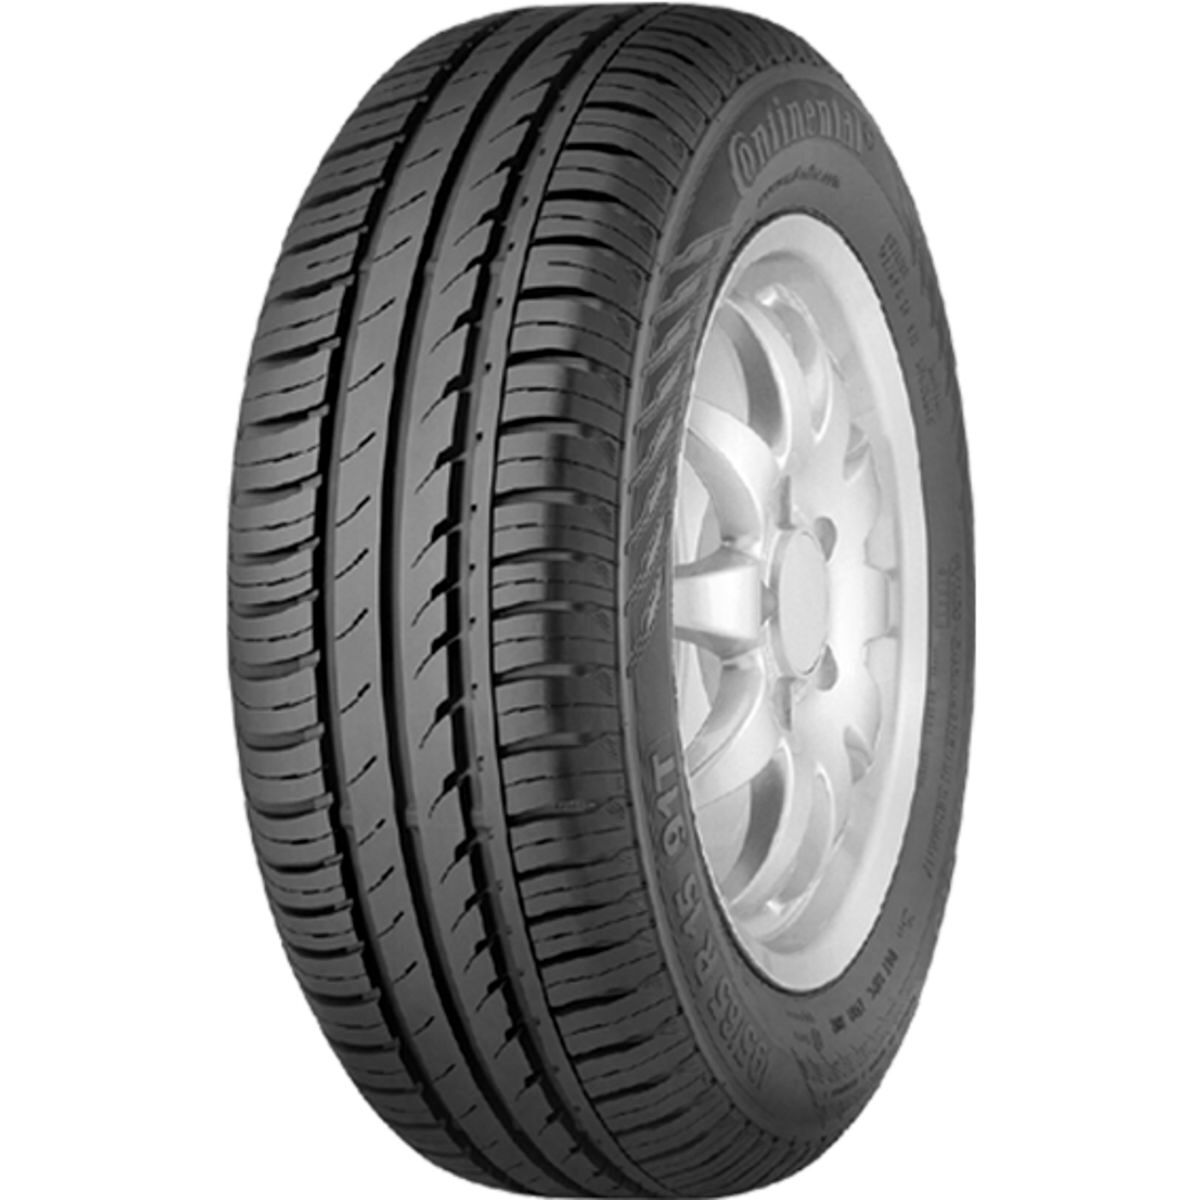 Neumáticos de verano CONTINENTAL ContiEcoContact 3 175/80R14 88H